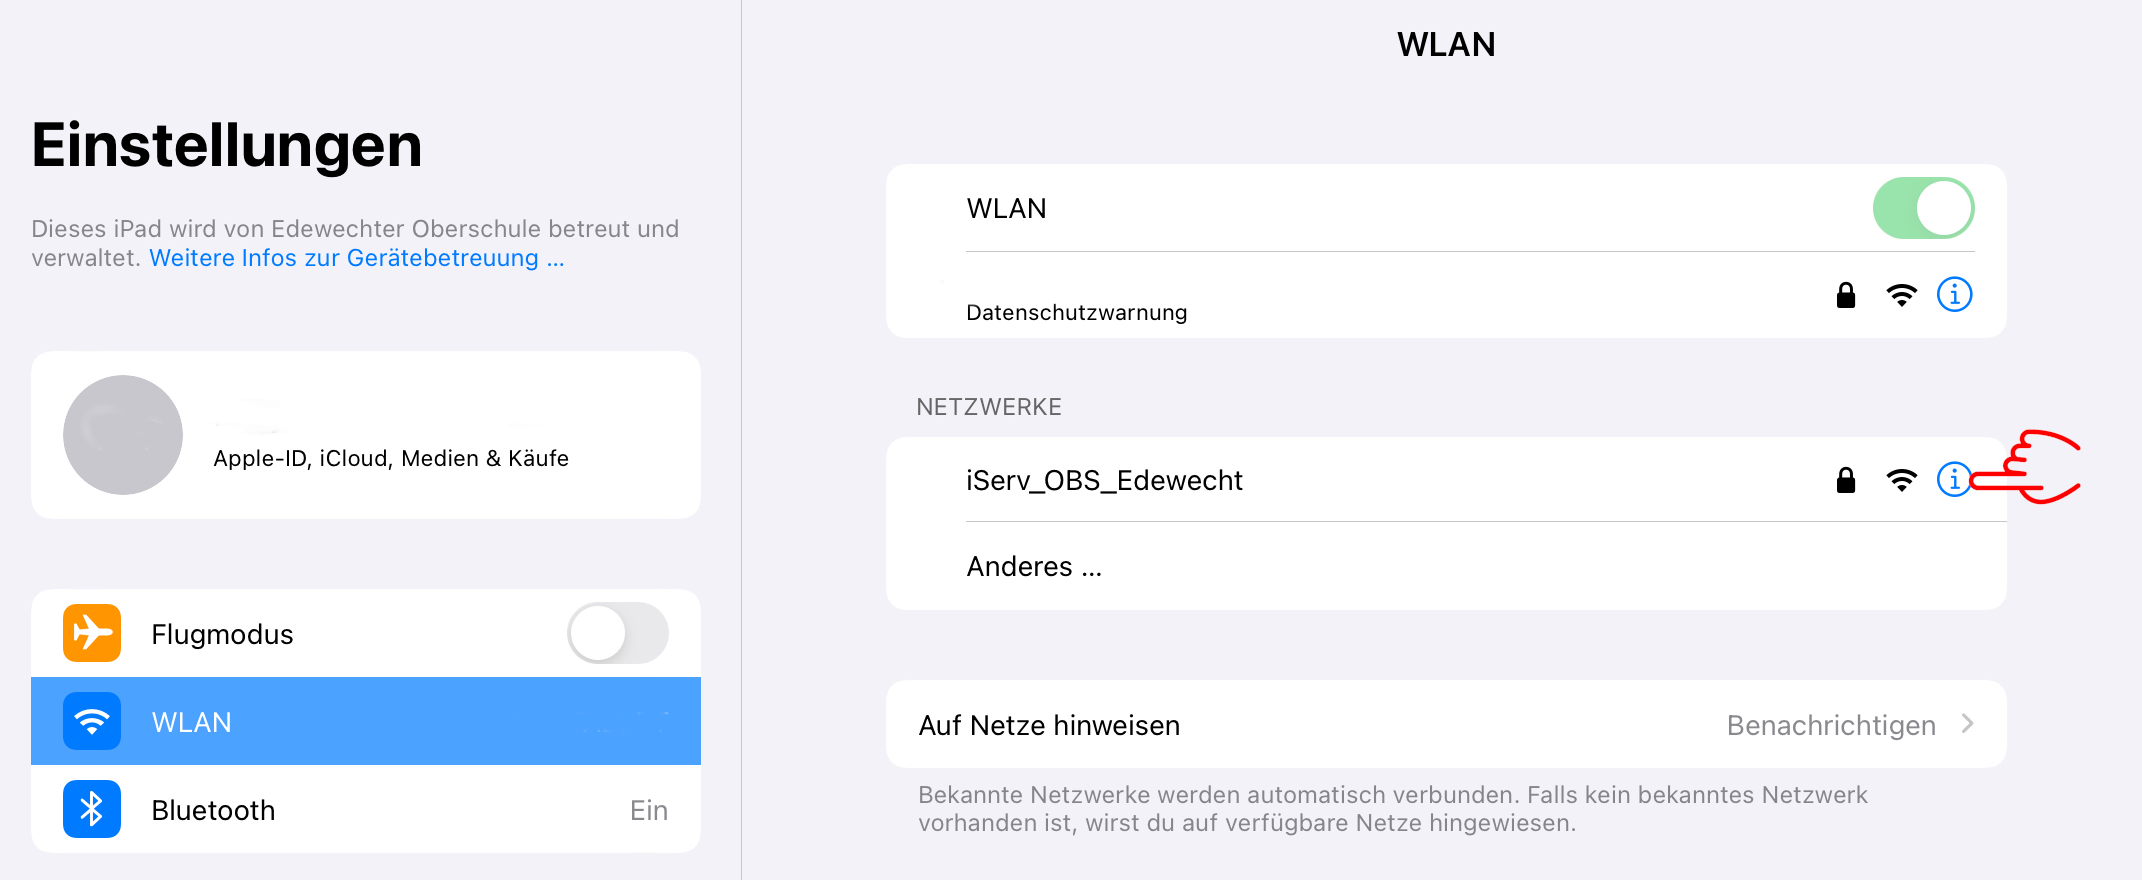 WLAN 1 1